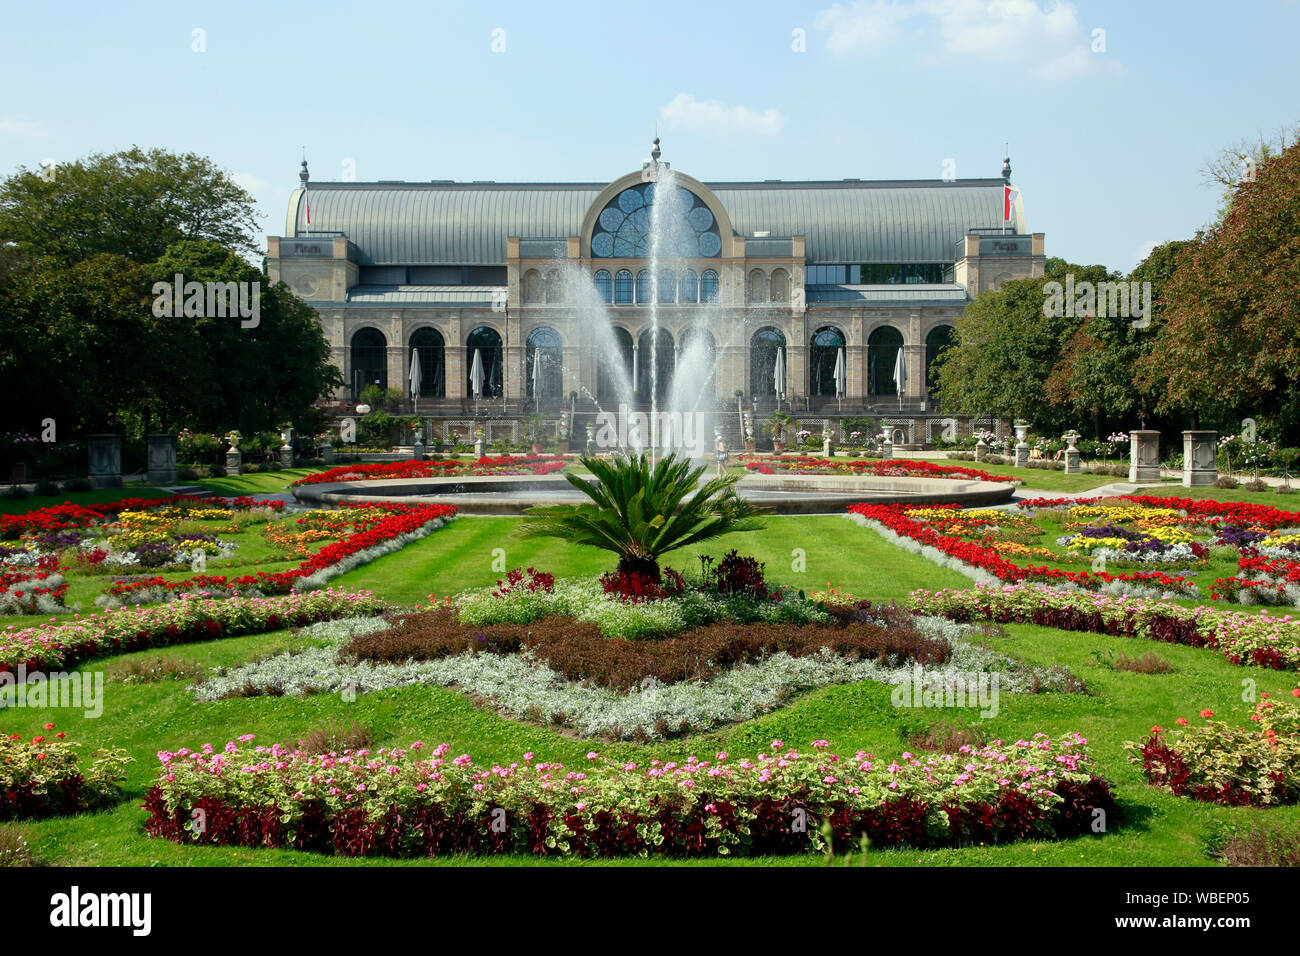 Botanischer Garten - Blumenbeete und Veranstaltungsgebäude, Köln, Nordrhein-Westfalen, Deutschland Stock Photo